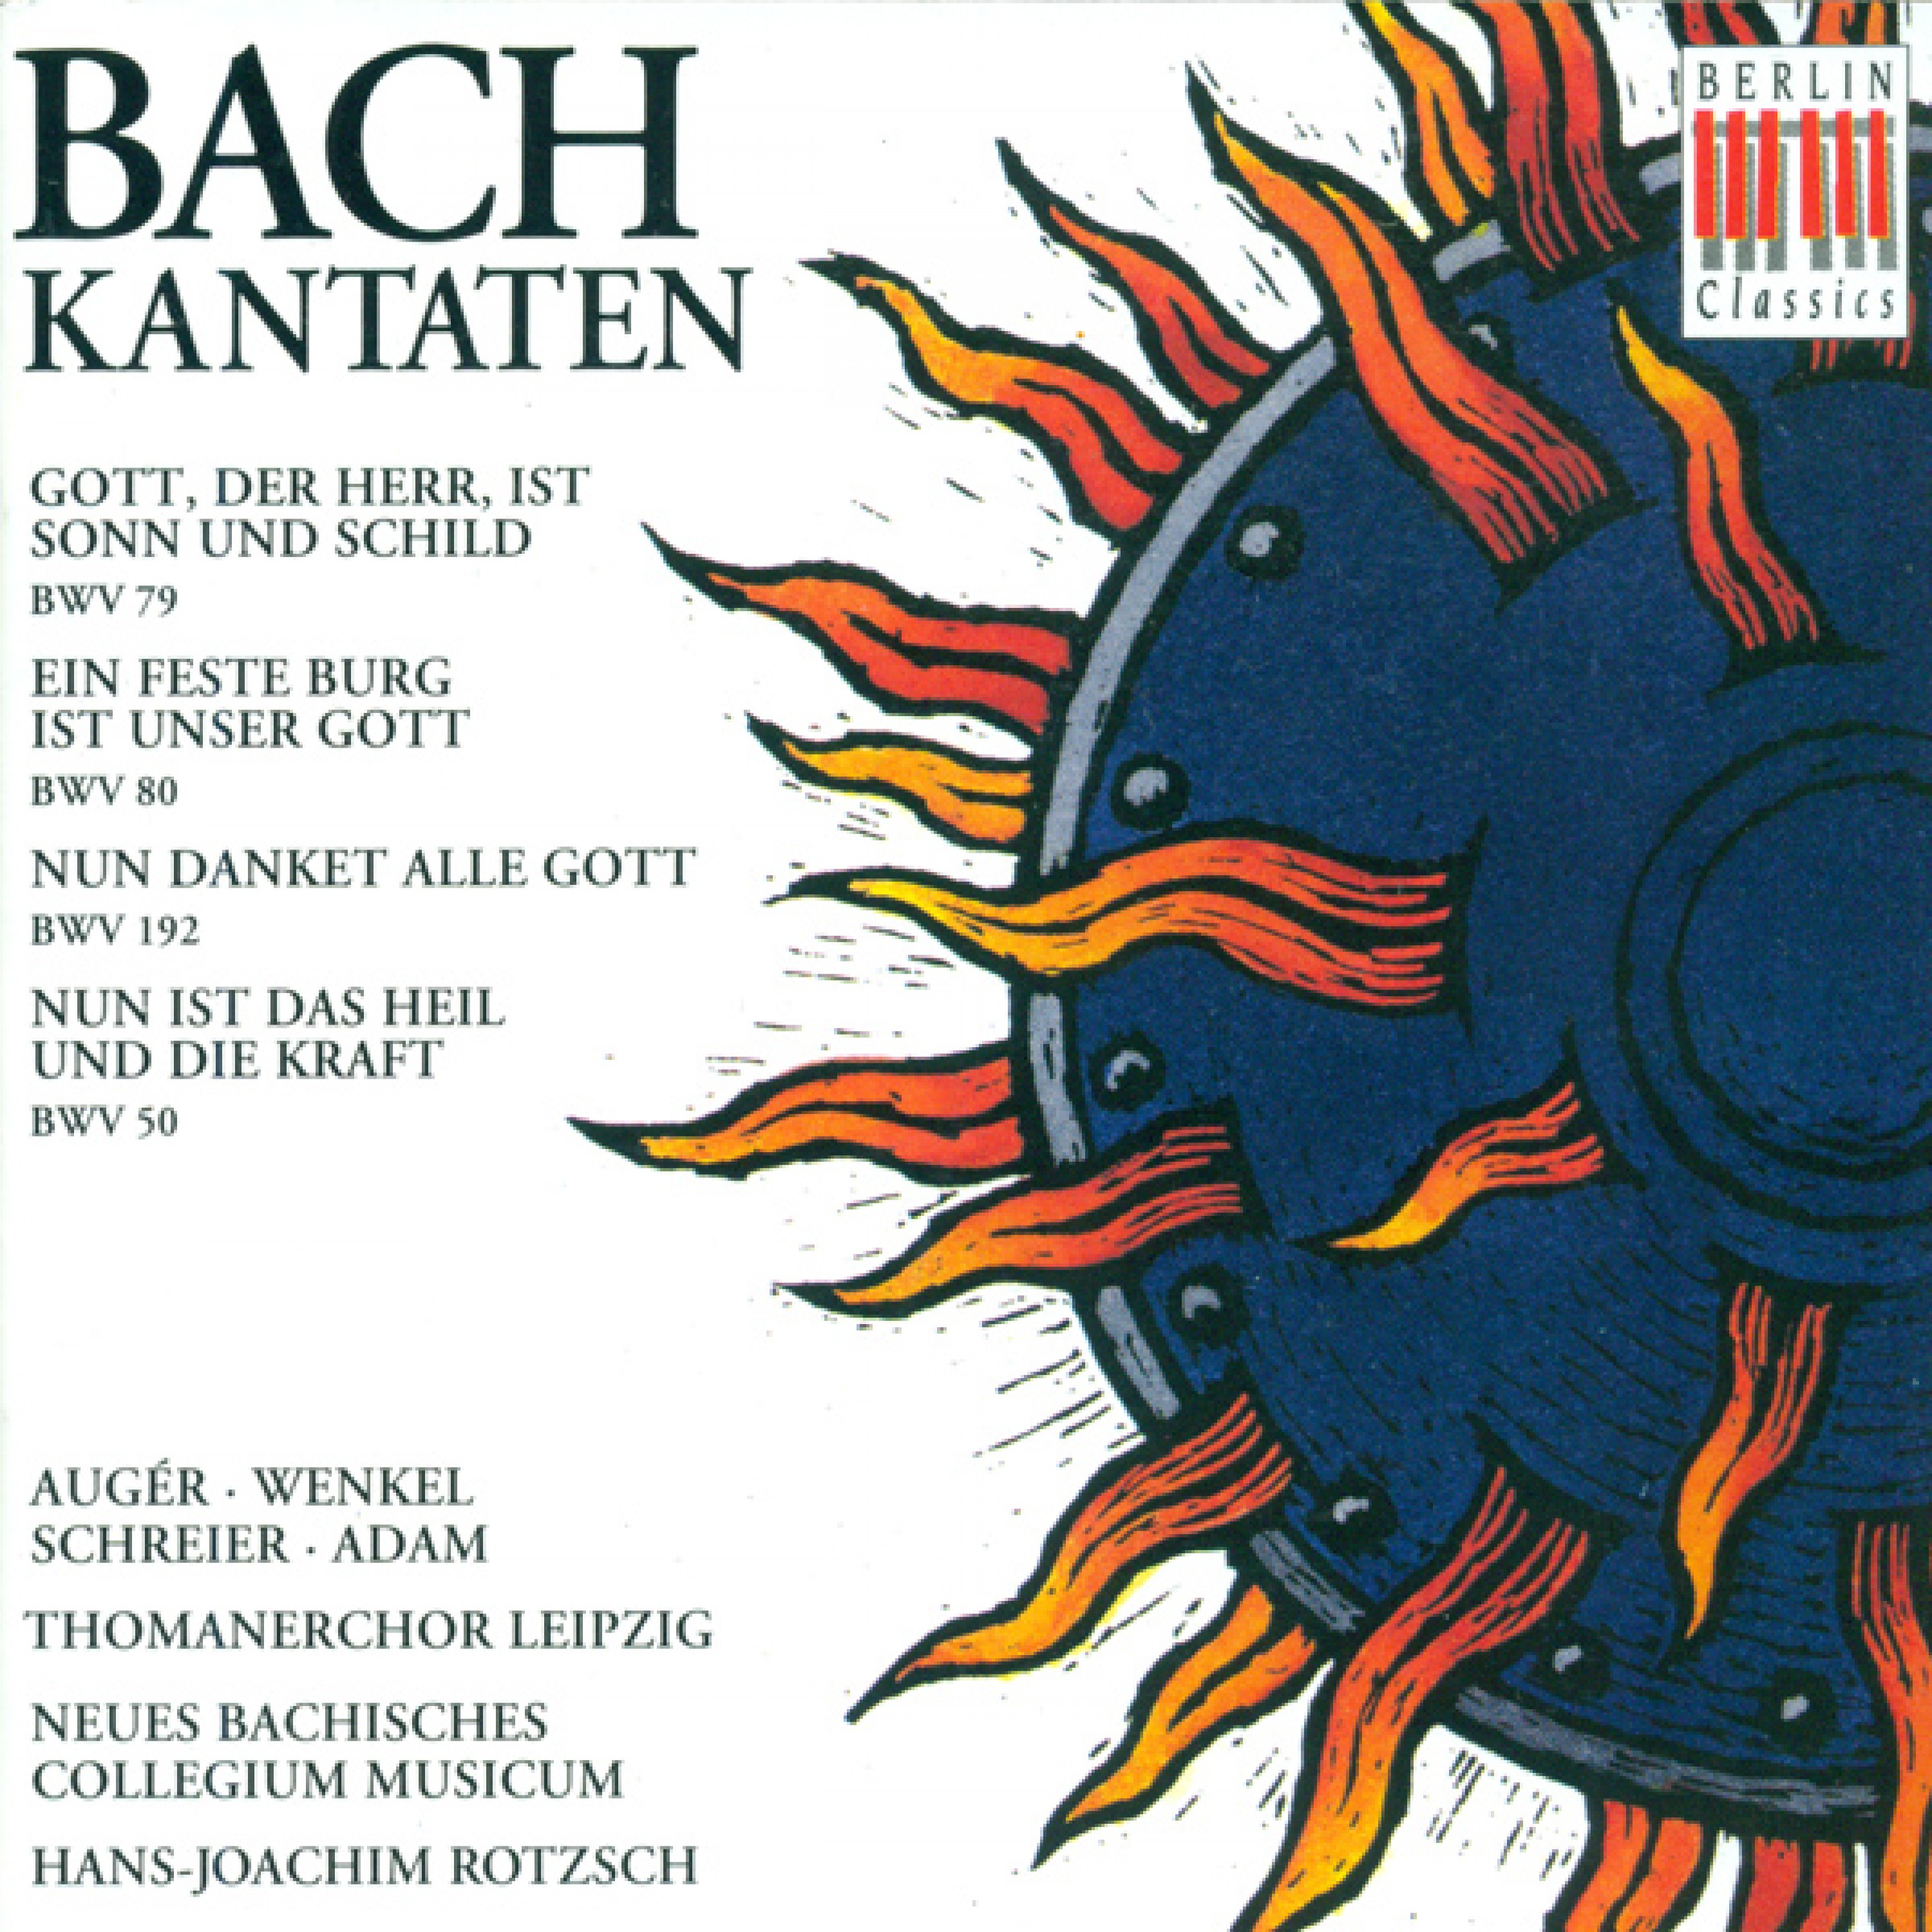 Ein feste Burg ist unser Gott, BWV 80: Aria with Chorale: Alles, was von Gott geboren (Bass, Soprano)